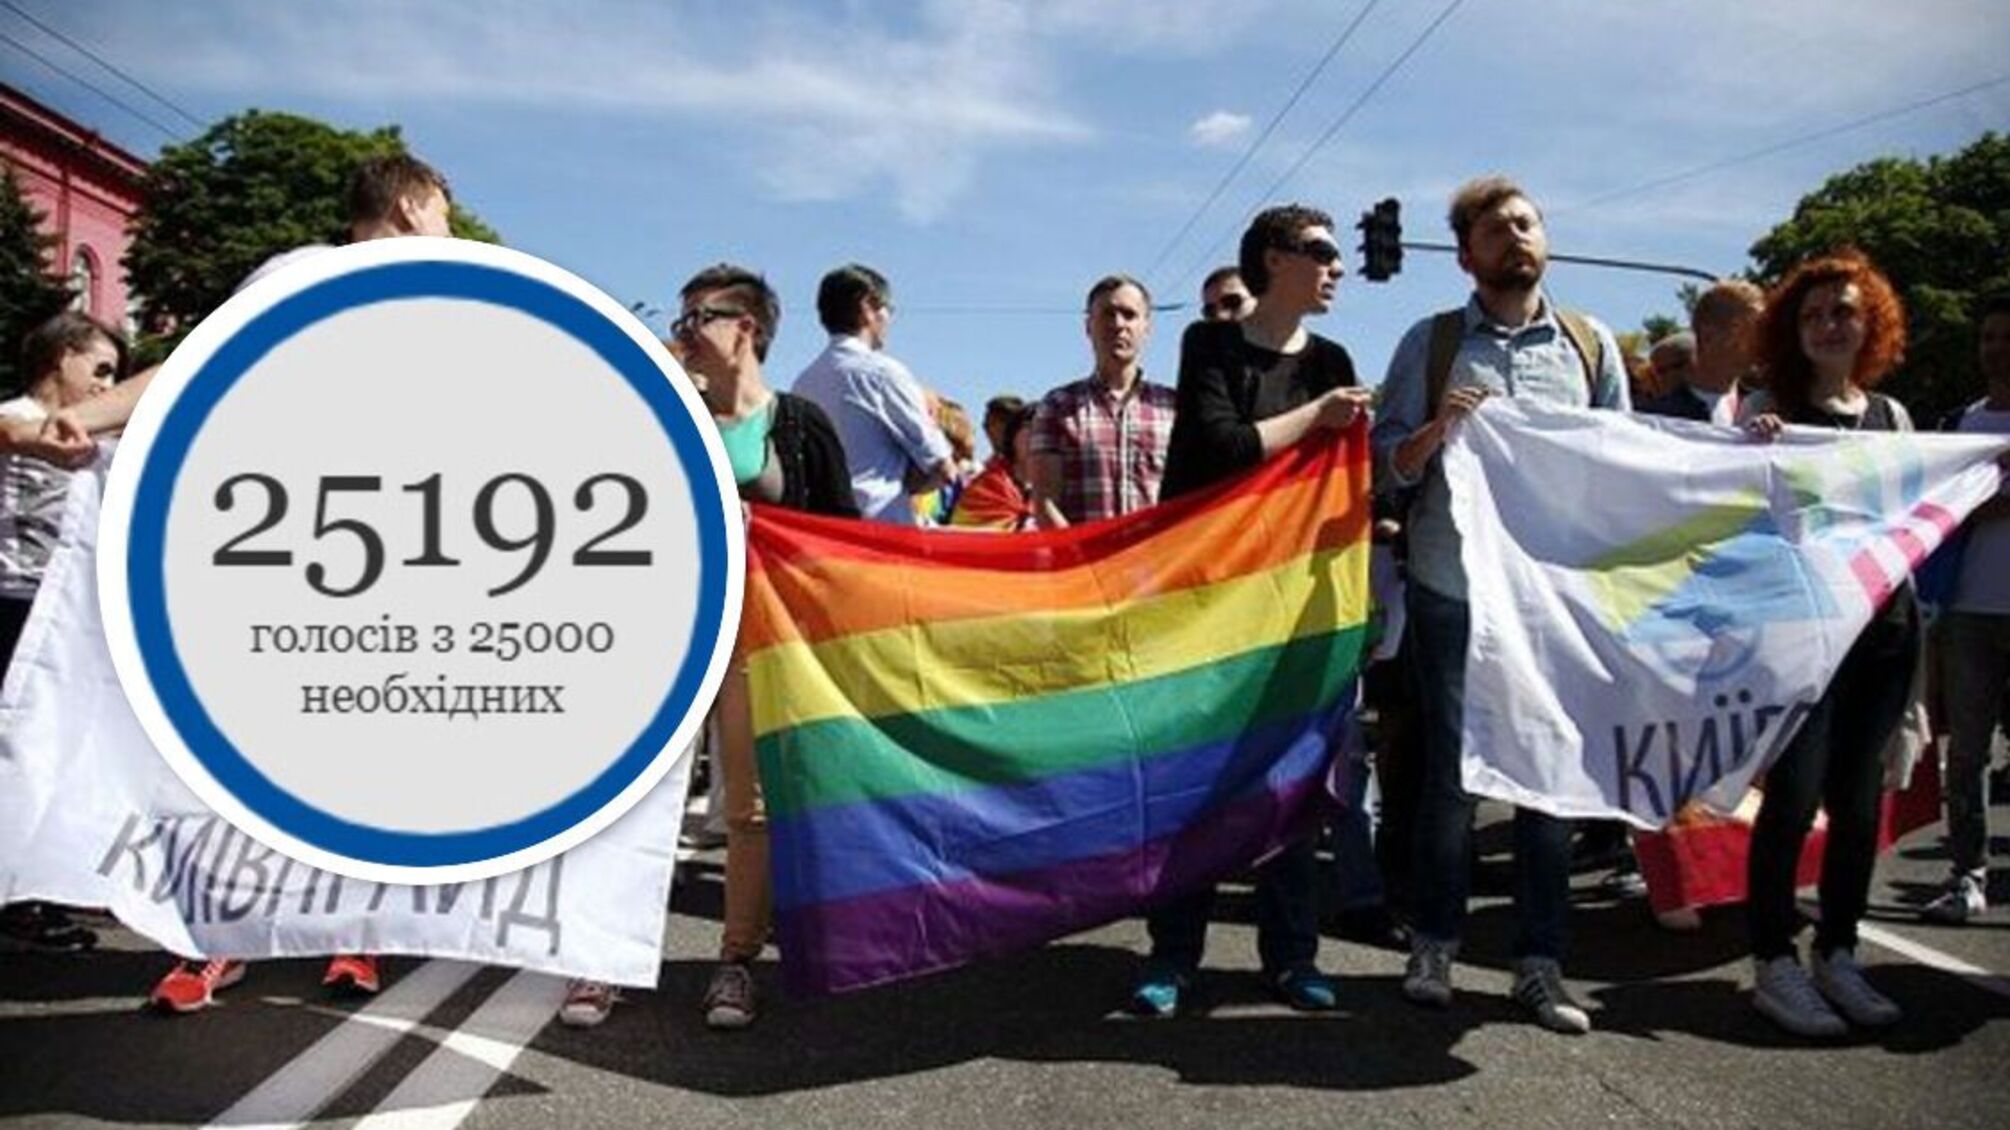 Петиція про легалізацію одностатевих шлюбів набрала 25 тисяч голосів